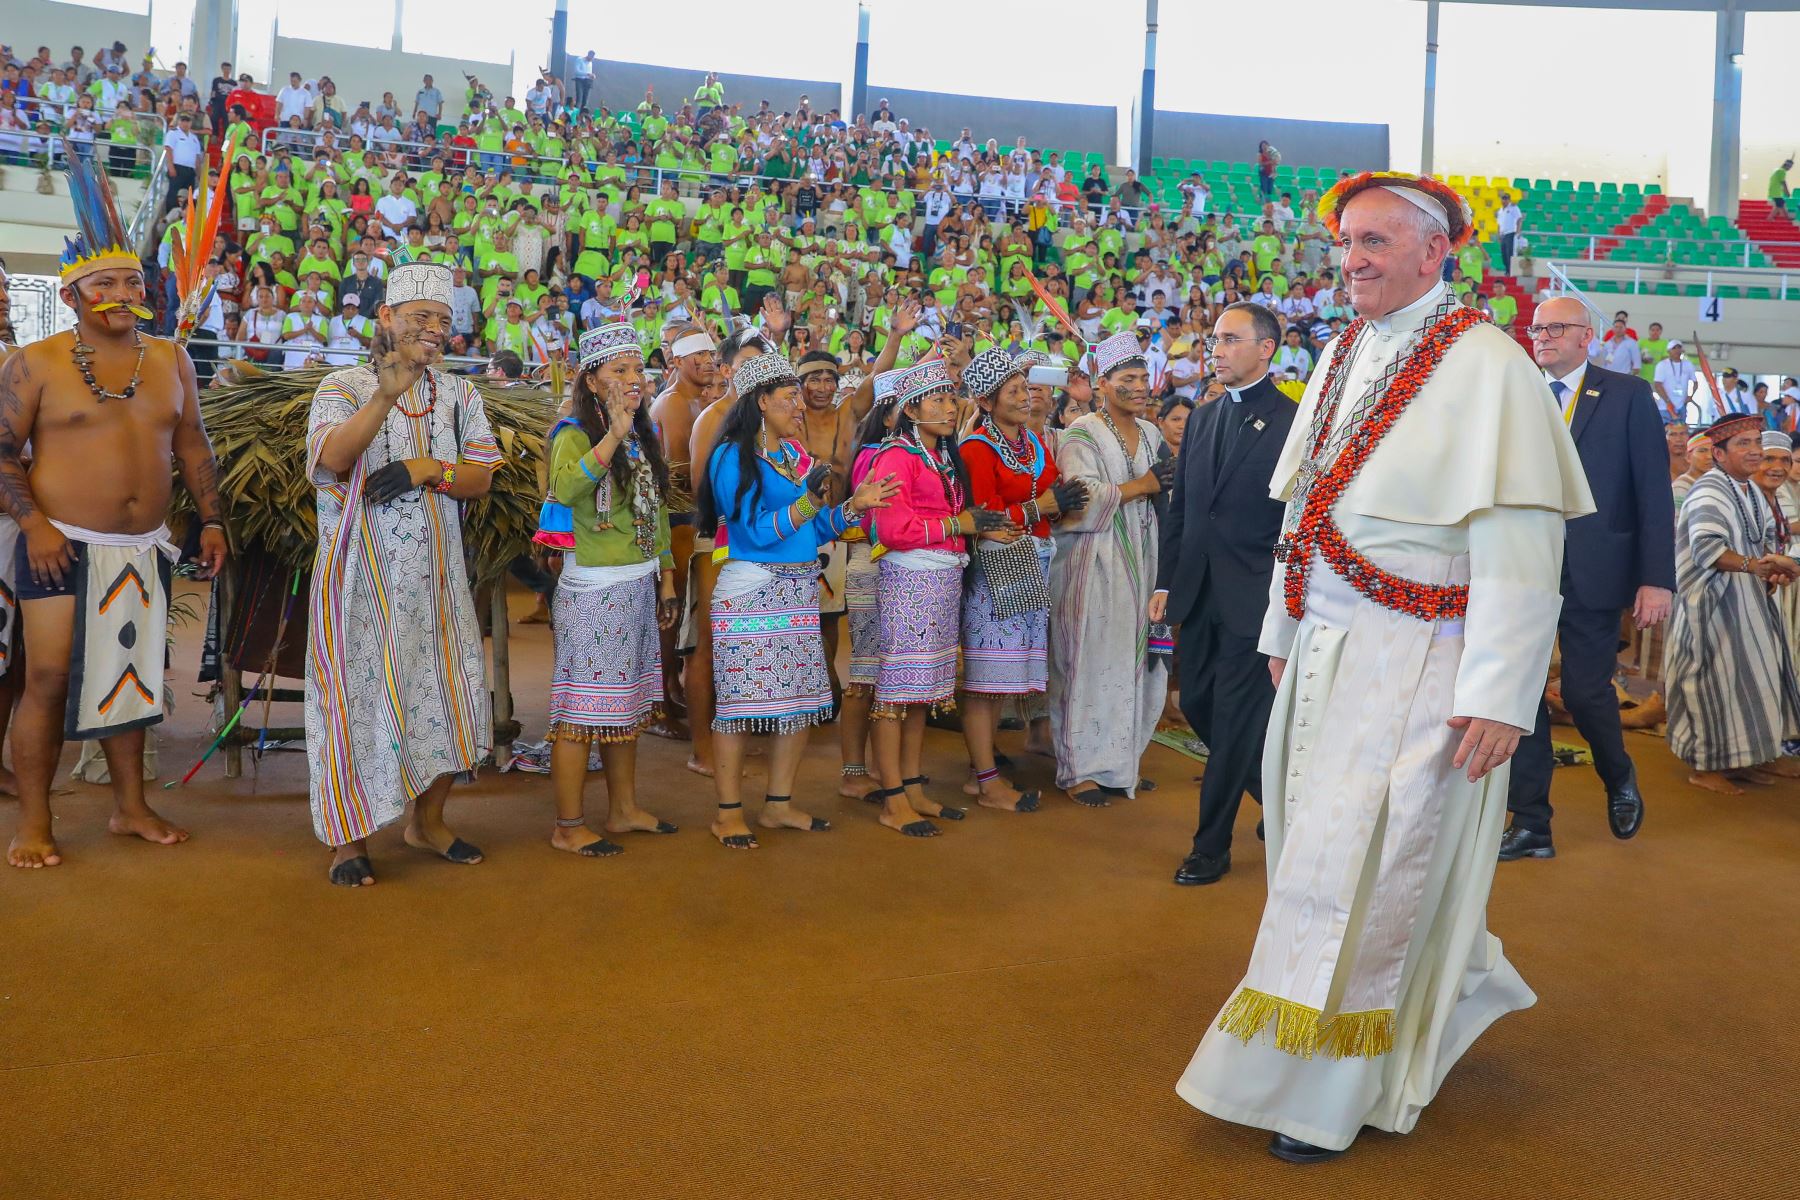 Encuentro del Papa Francisco con los pueblos de la Amazonia en el Coliseo Regional Madre de Dios. Foto: ANDINA/Andres Valle